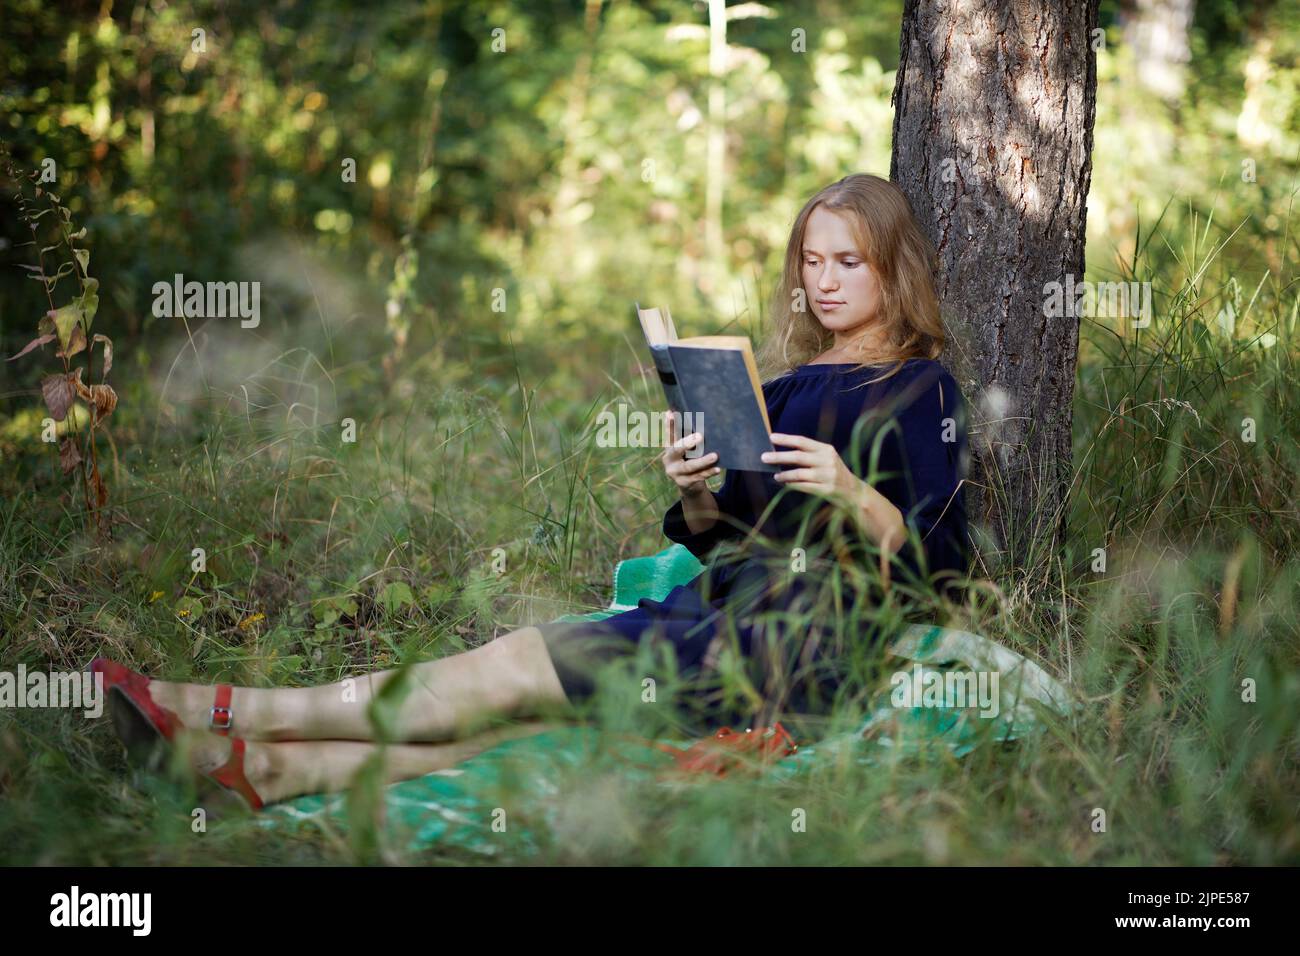 La fille lit un livre dans un parc assis sous un arbre. Mise au point peu profonde. Banque D'Images